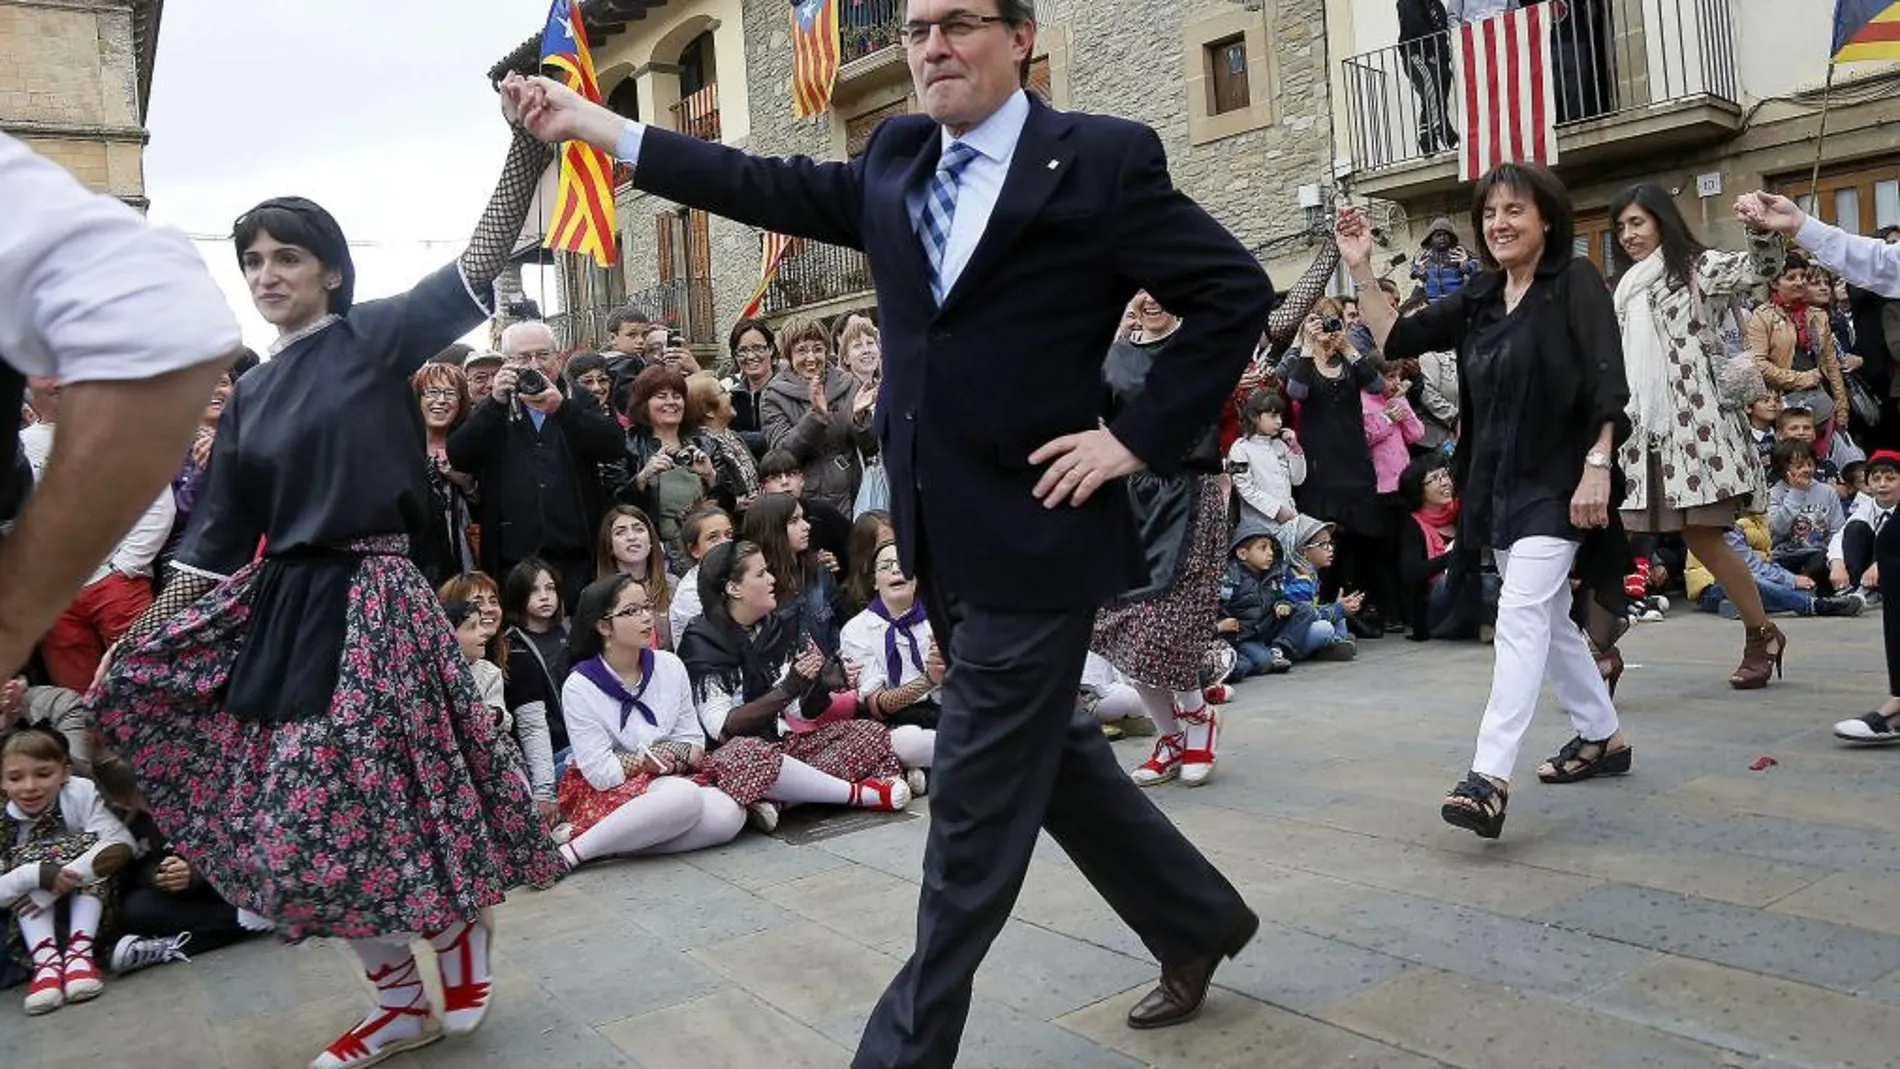 El presidente de la Generalitat, Artur Mas, participa en una danza durante los actos organizados con motivo de la Fiesta Verdaguer 2013, hoy 19 de mayo de 2013.